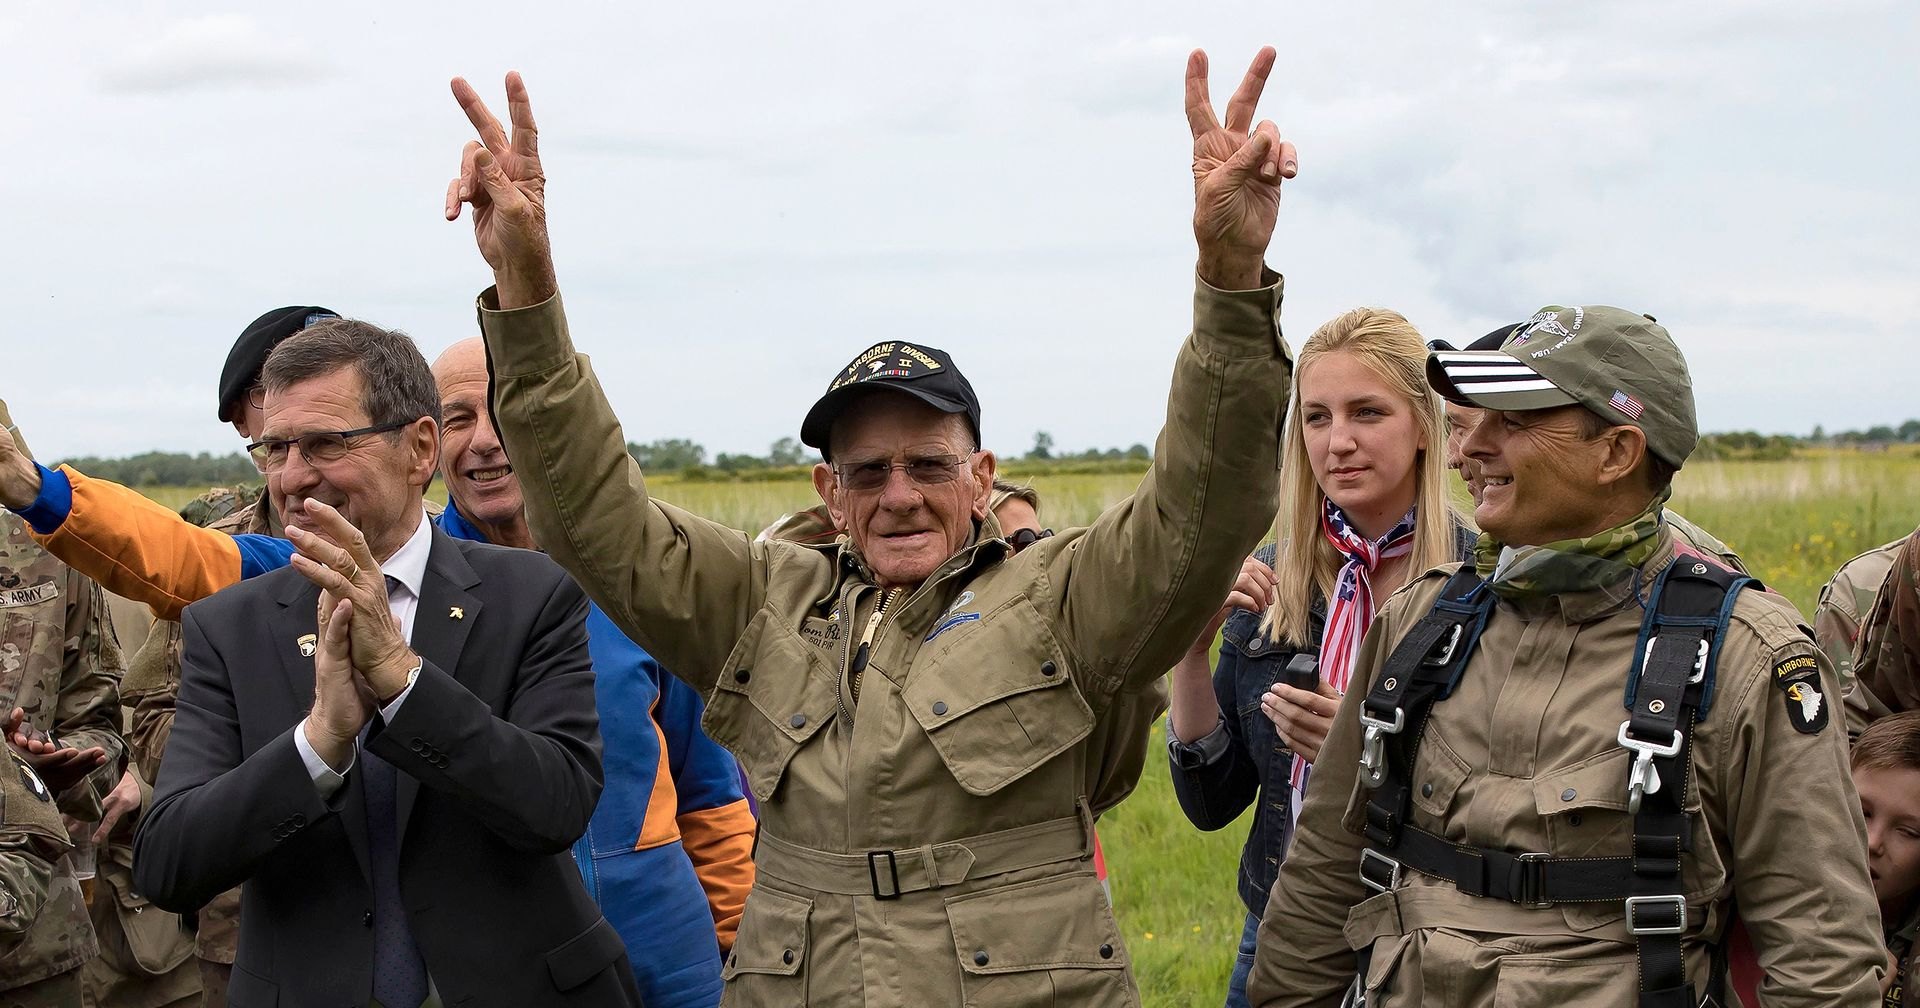 Тряхнул стариной: 97-летний десантник снова высадился в Нормандии